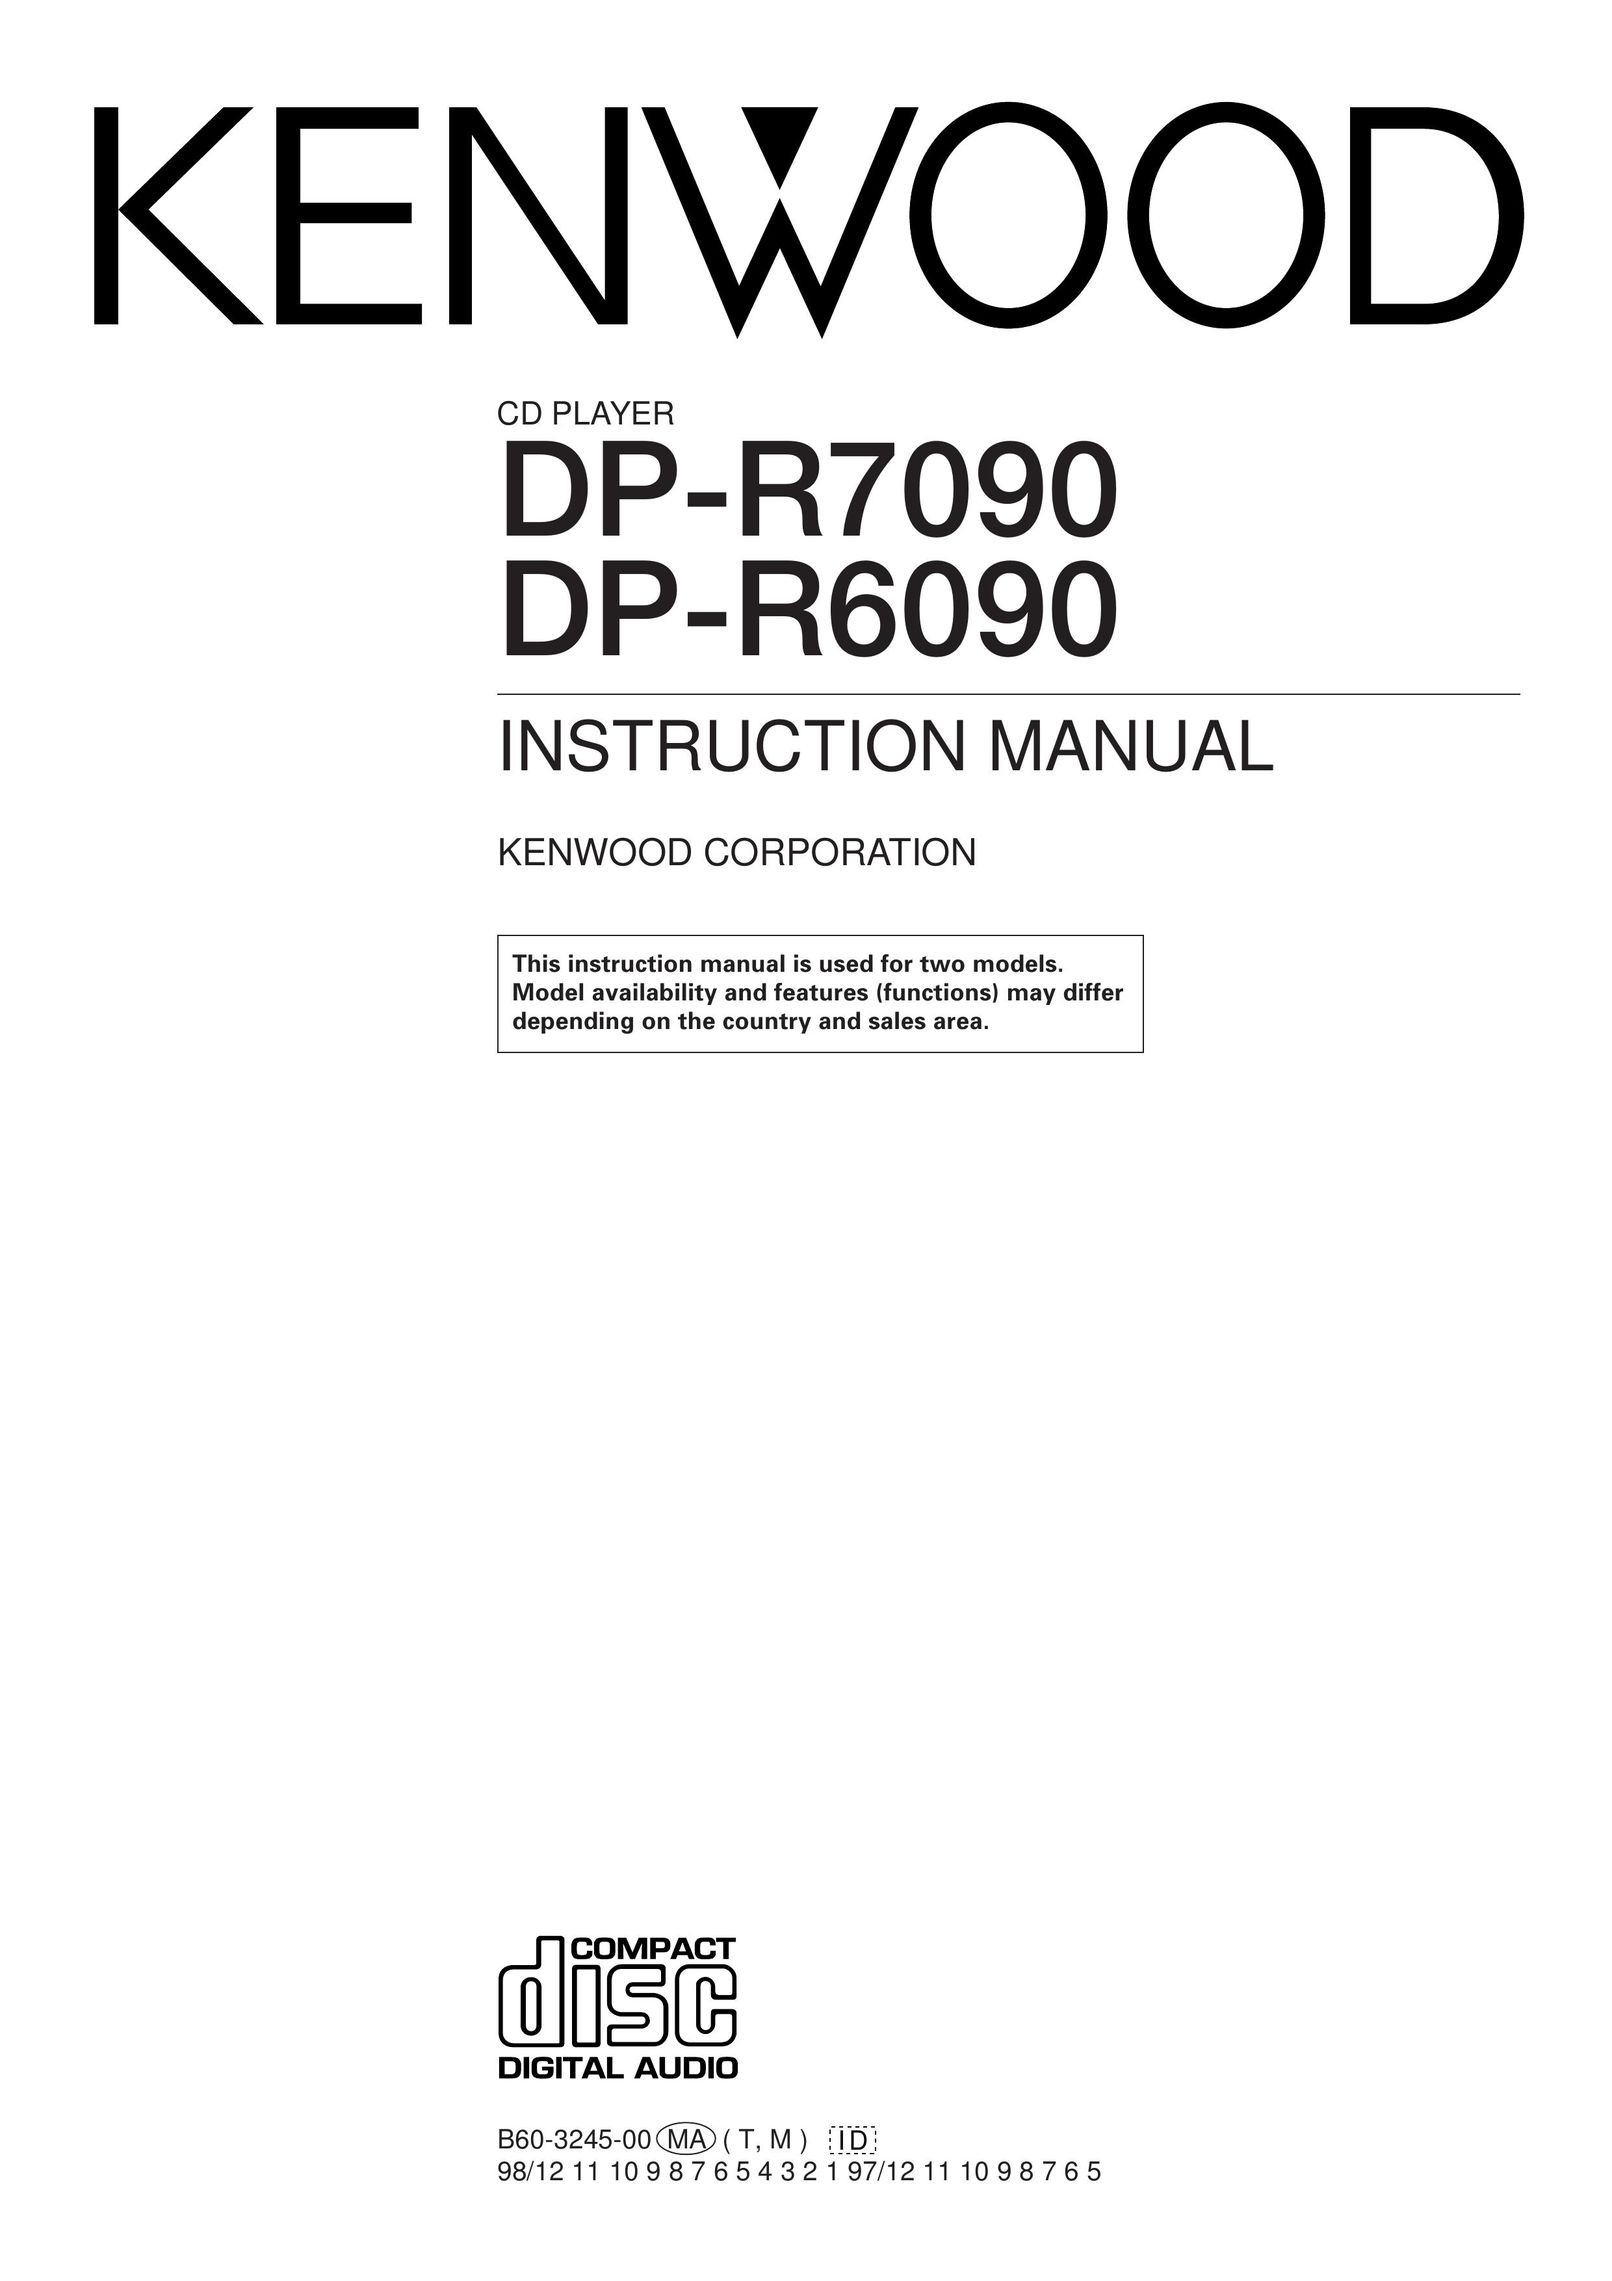 Kenwood DP-R7090 CD Player User Manual